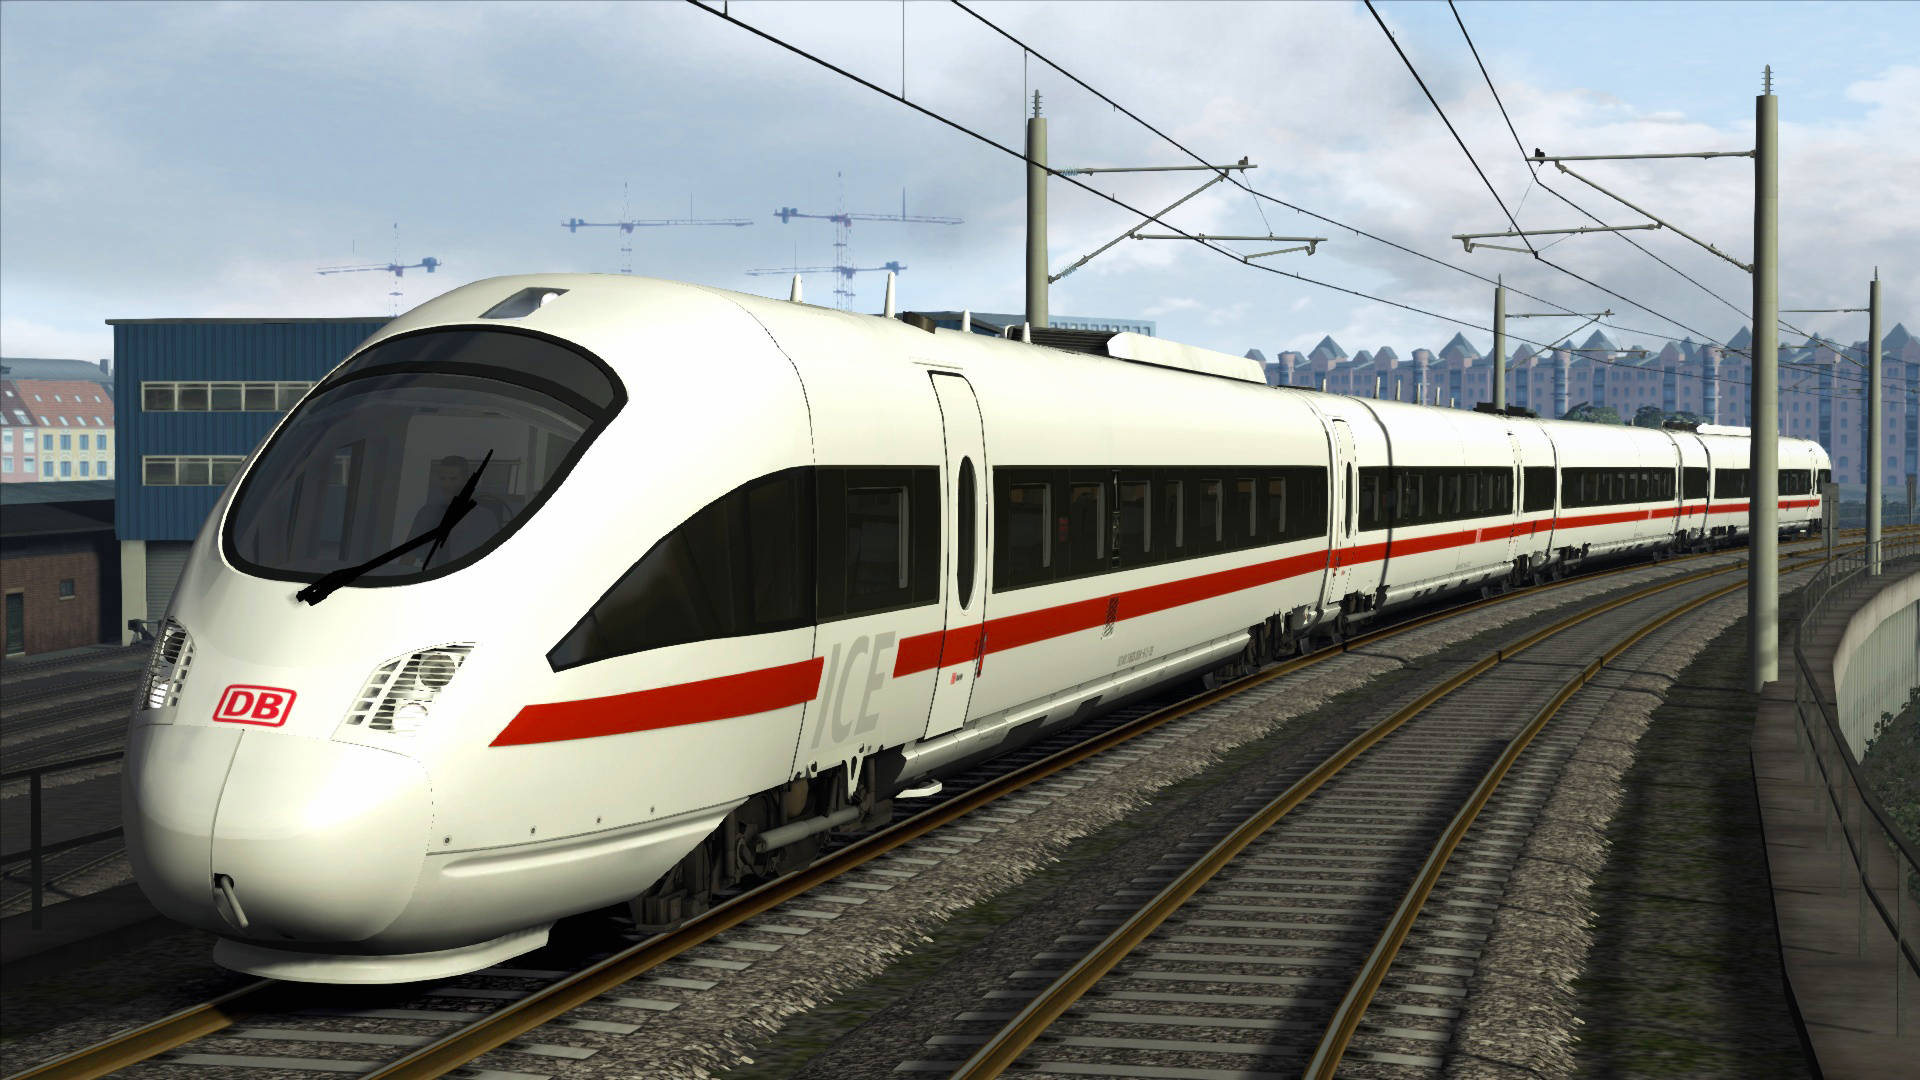 Train Simulator - DB BR 605 ICE TD Add-On DLC Steam CD Key 1.34 $